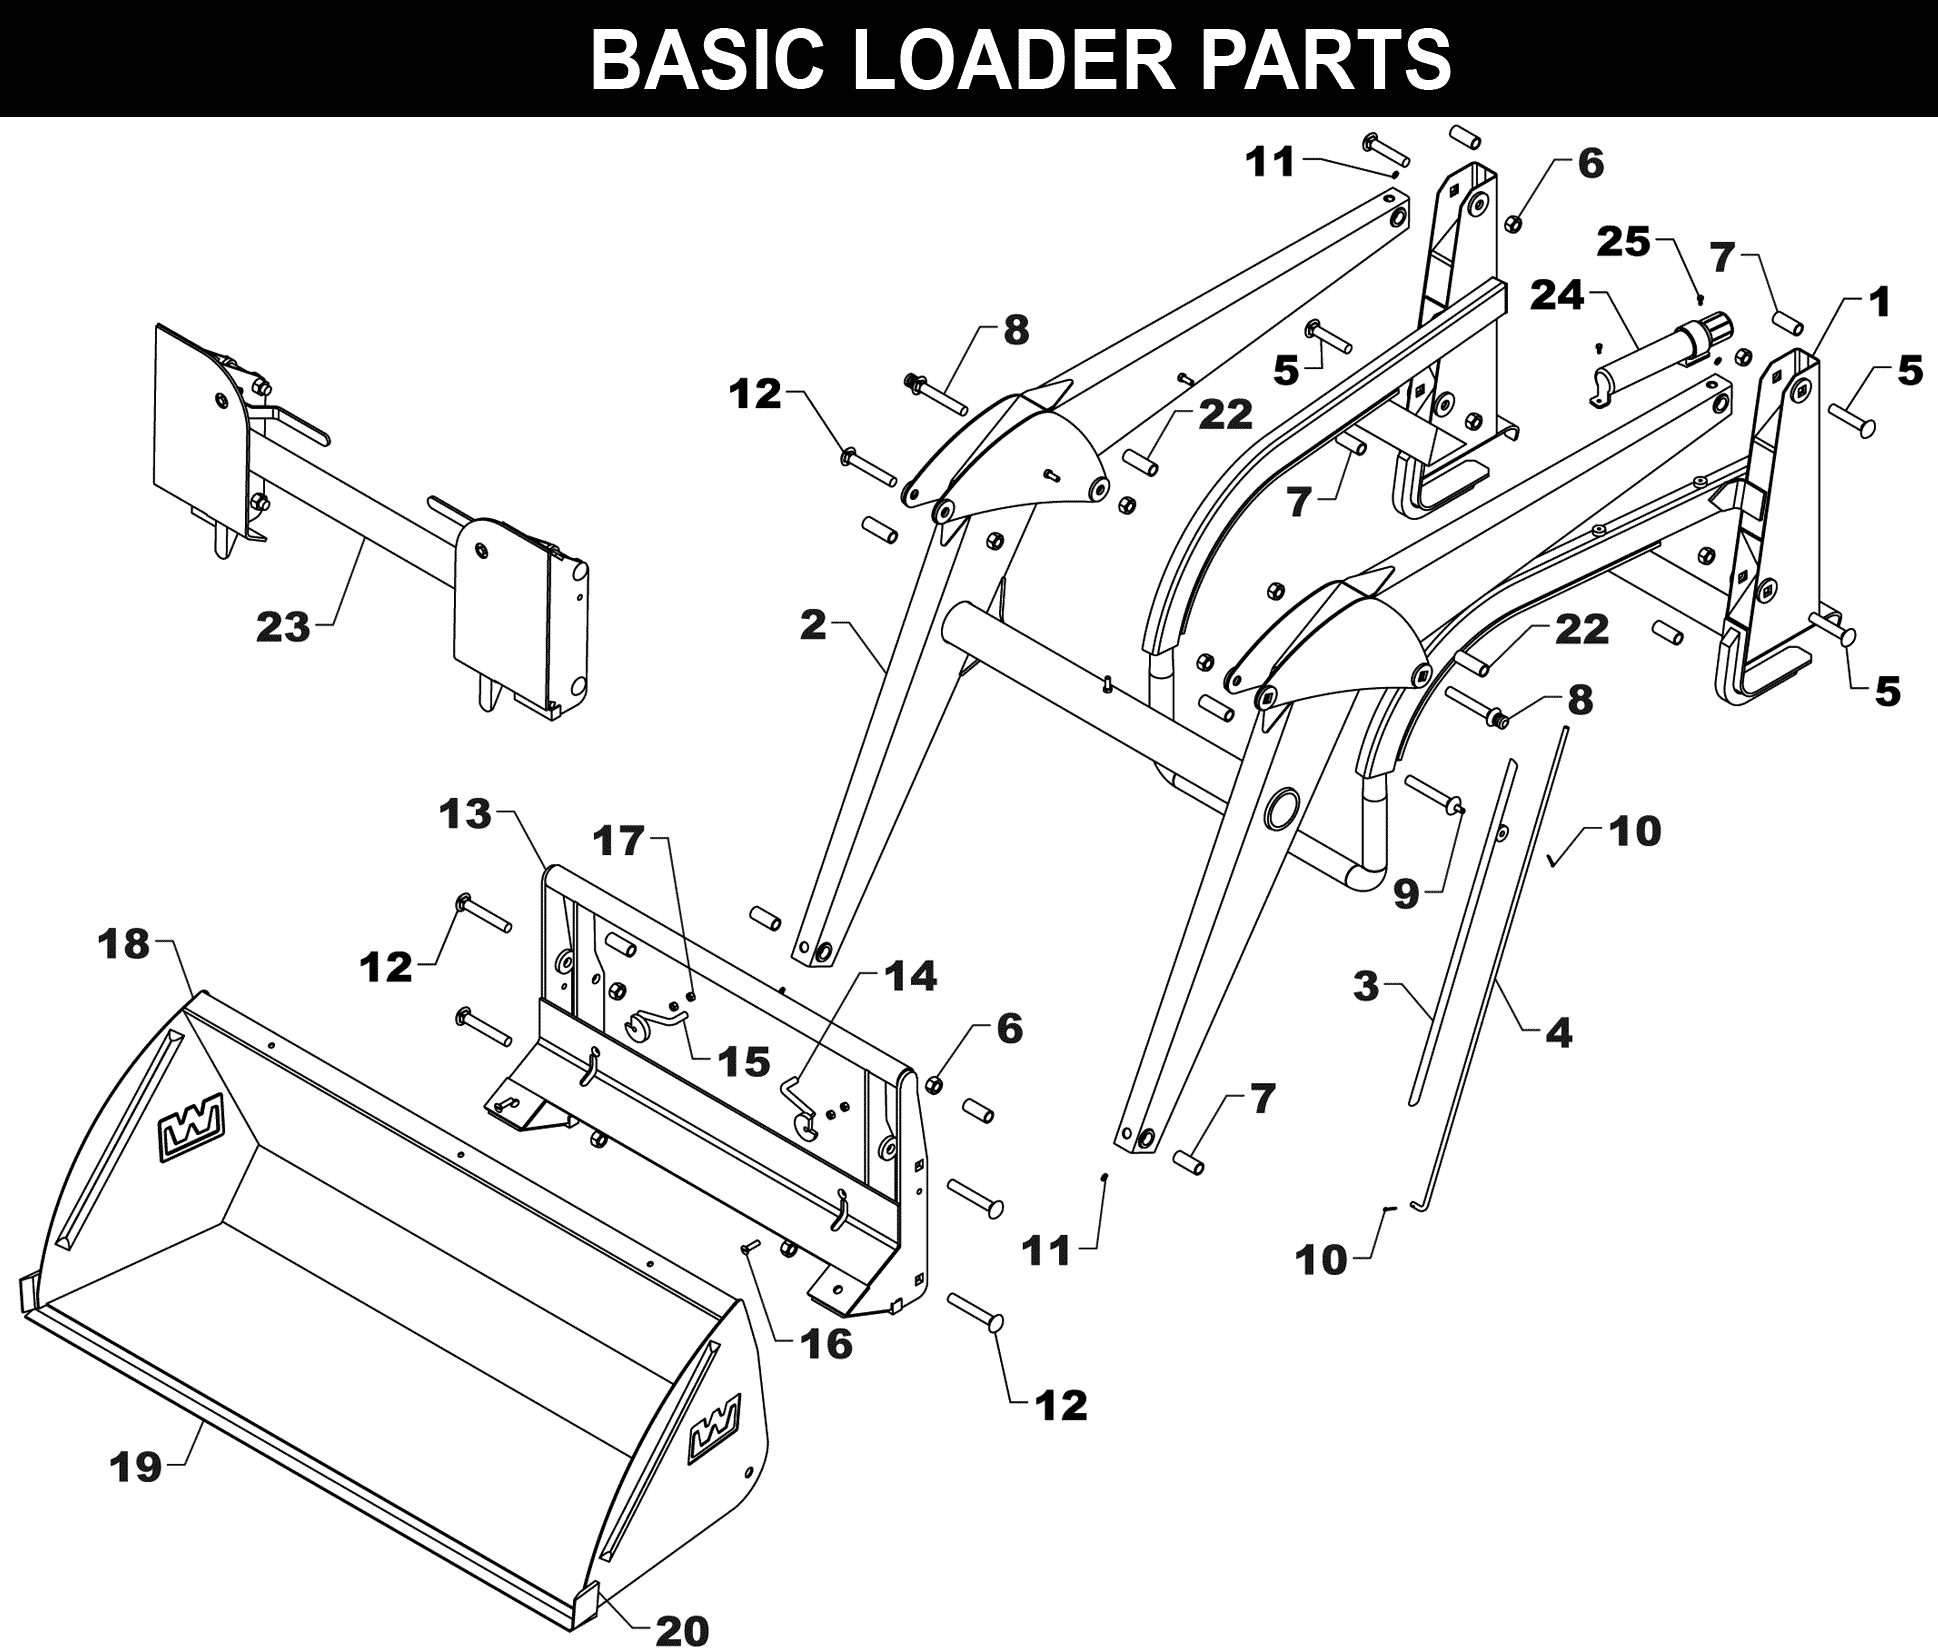 TA-111 Basic Loader Parts